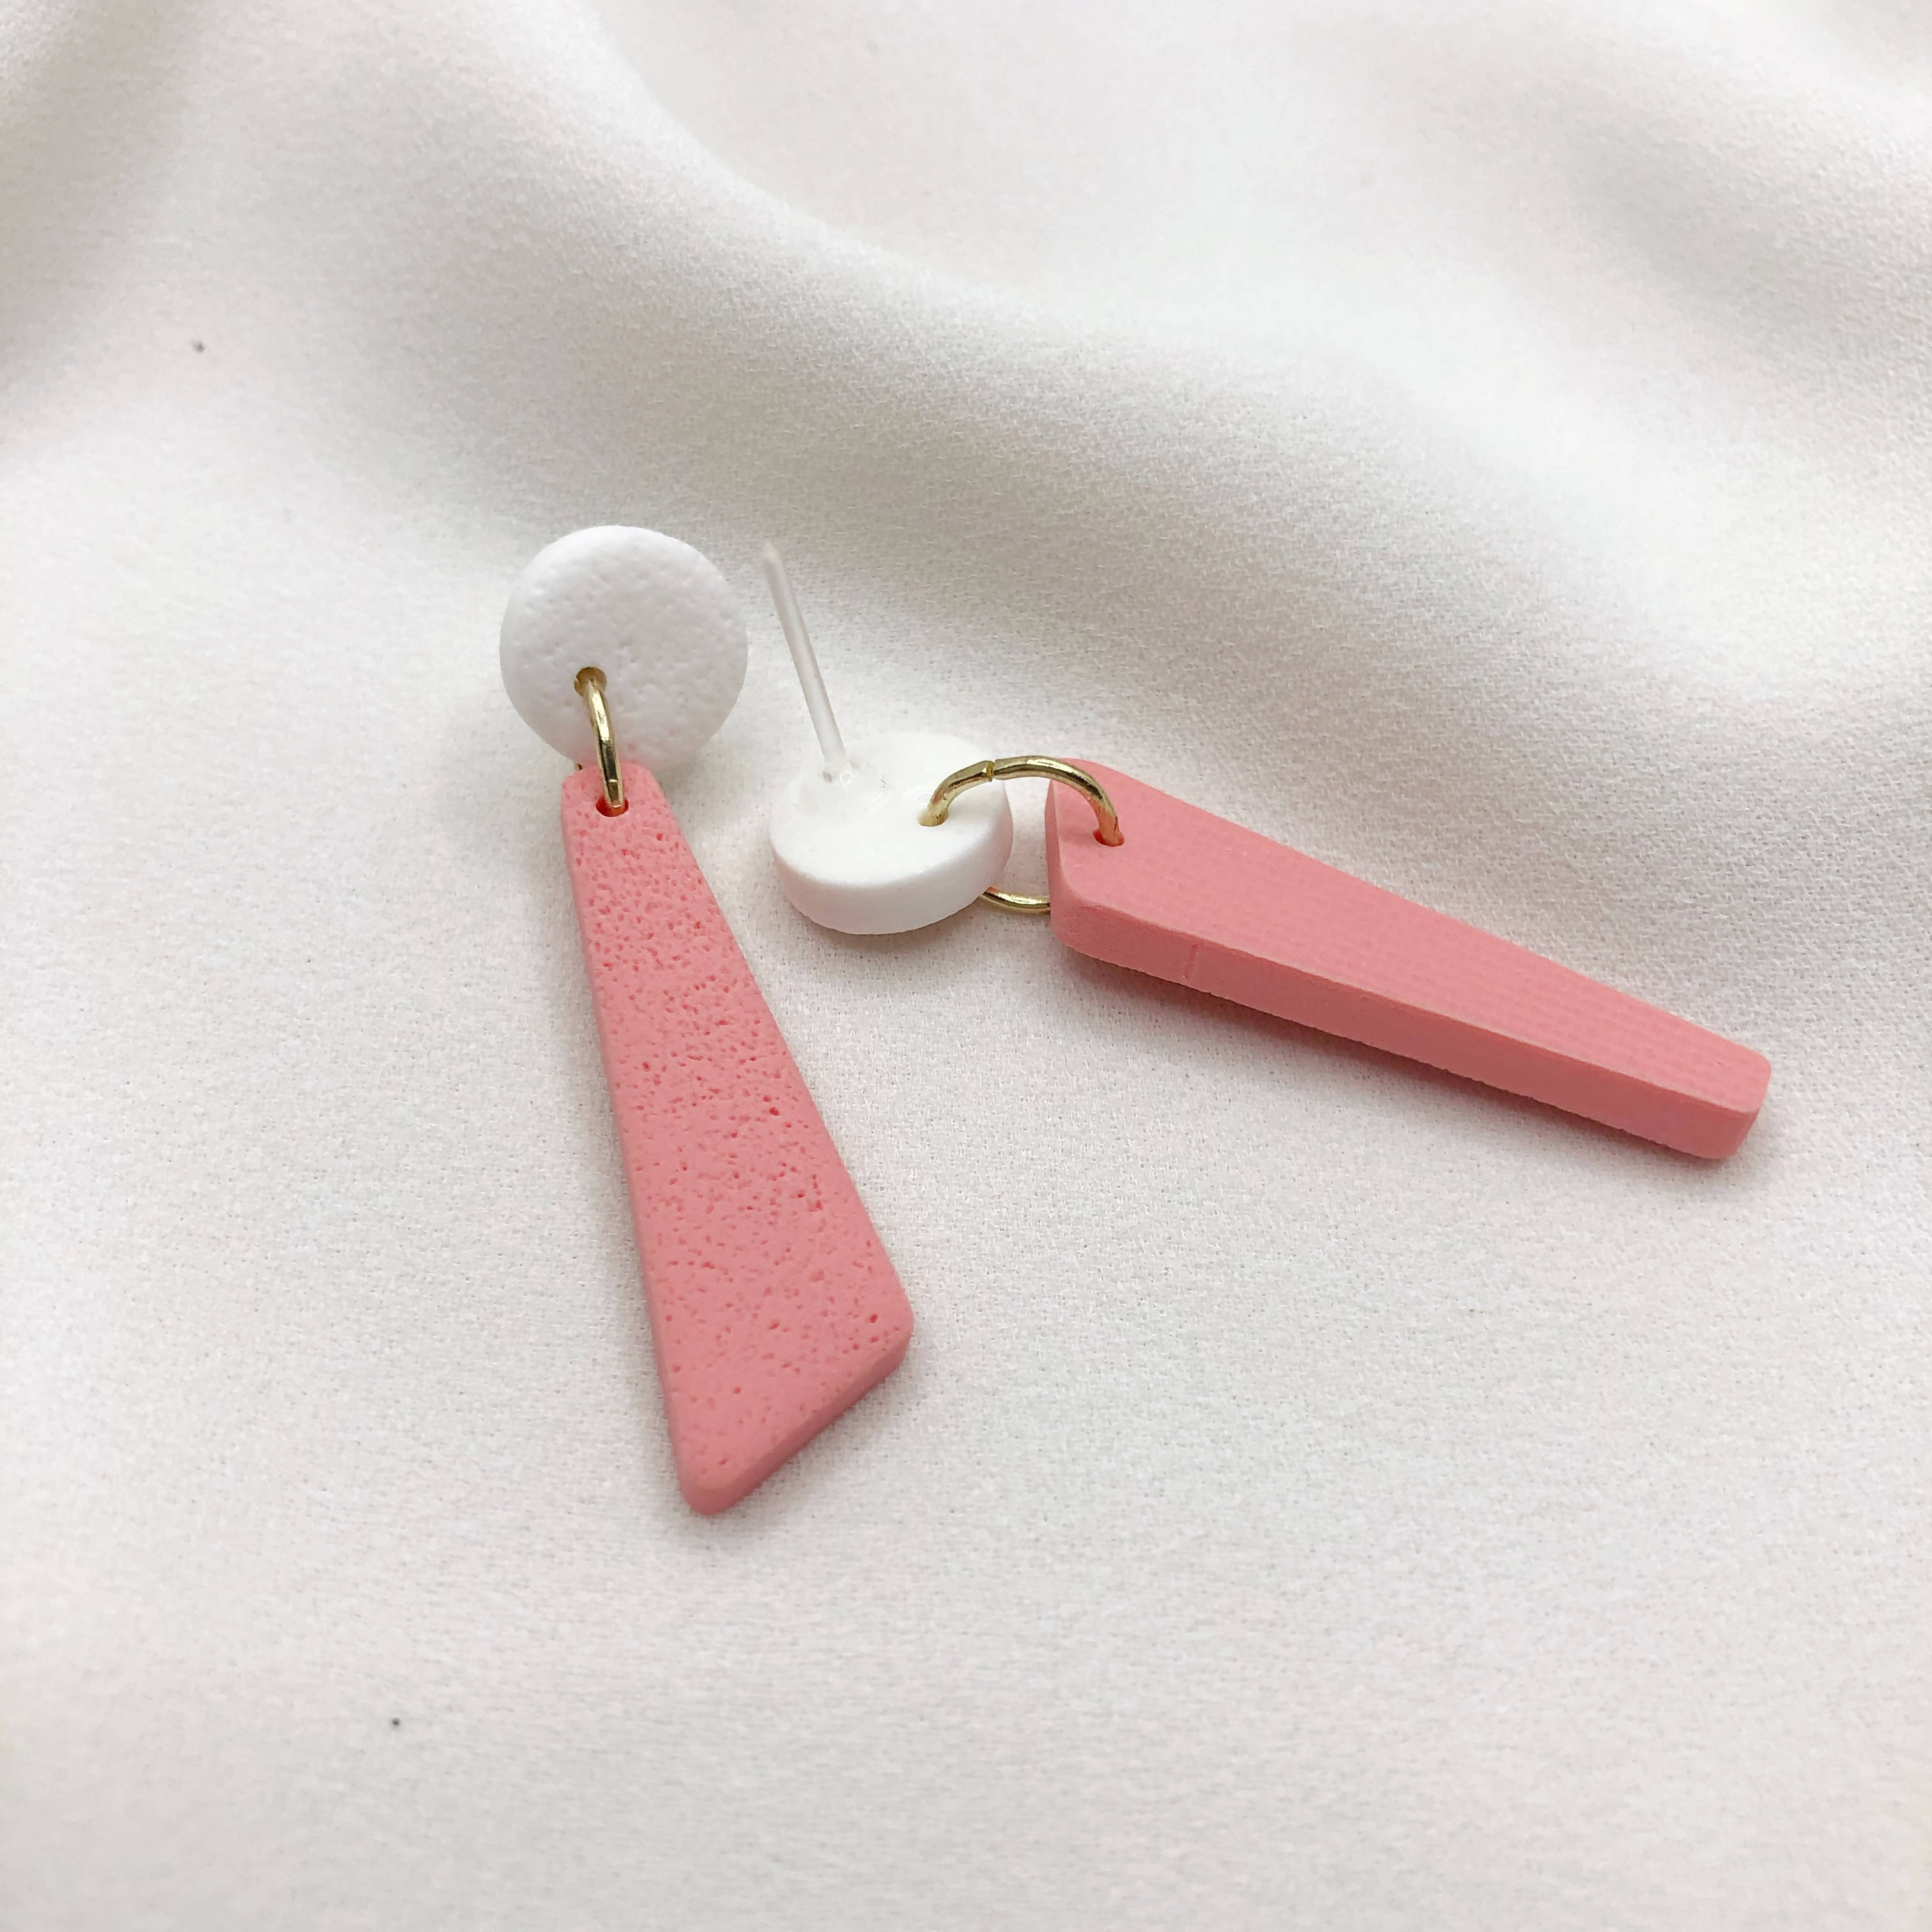 Stylish Asymmetrical Earrings - Anti Allergic Earbacks - Gift for Sister - Wear Sierra